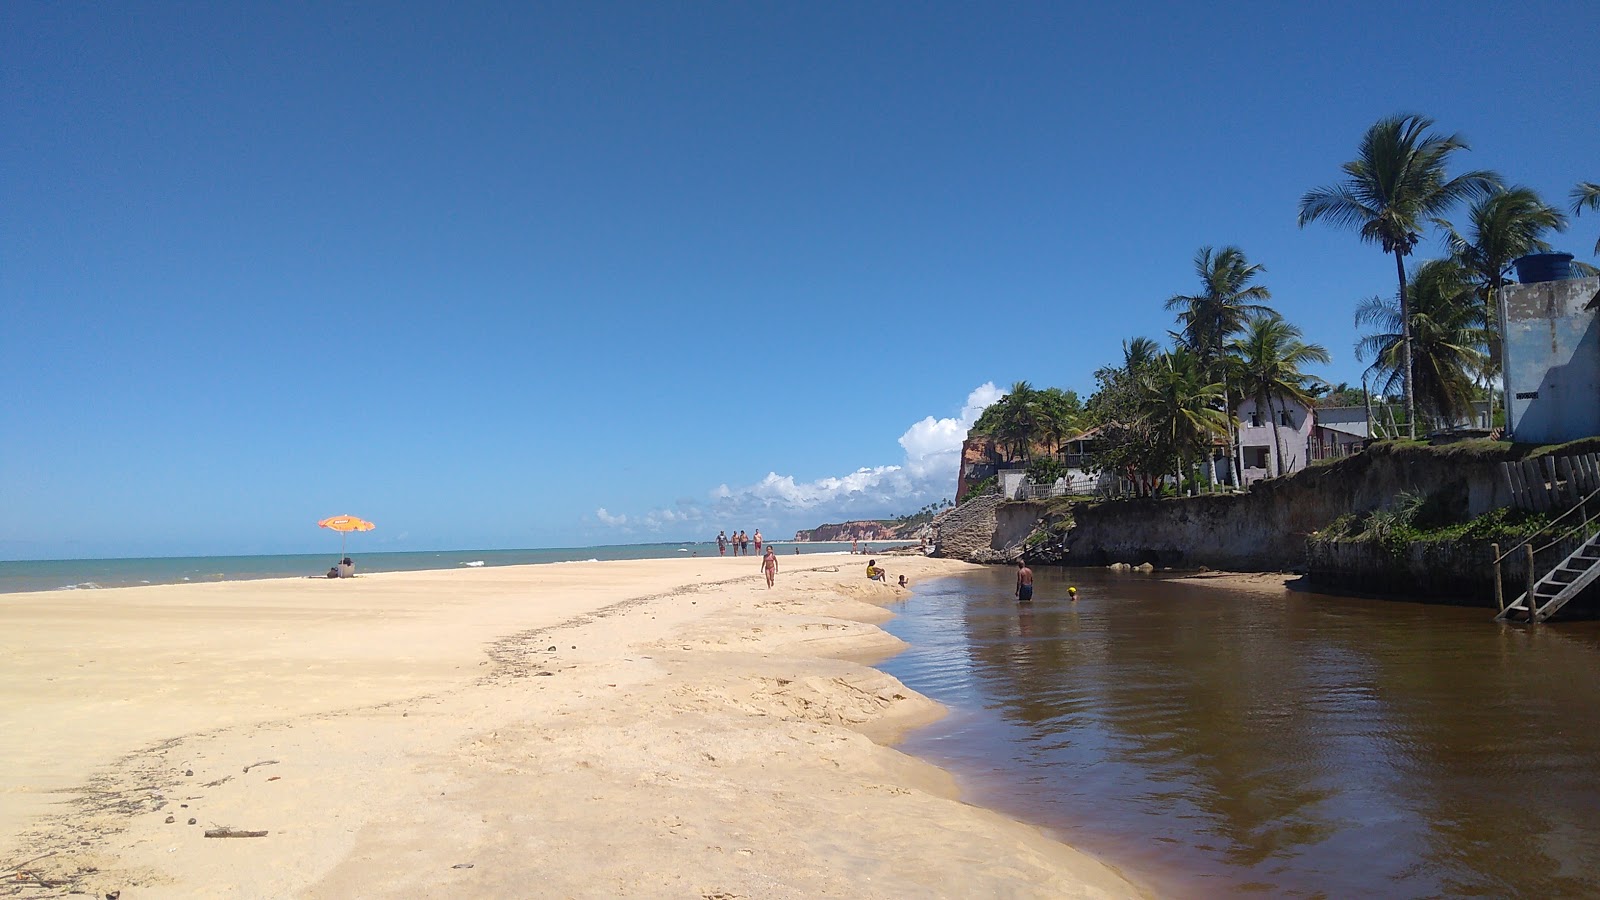 Praia Da Paixao'in fotoğrafı imkanlar alanı